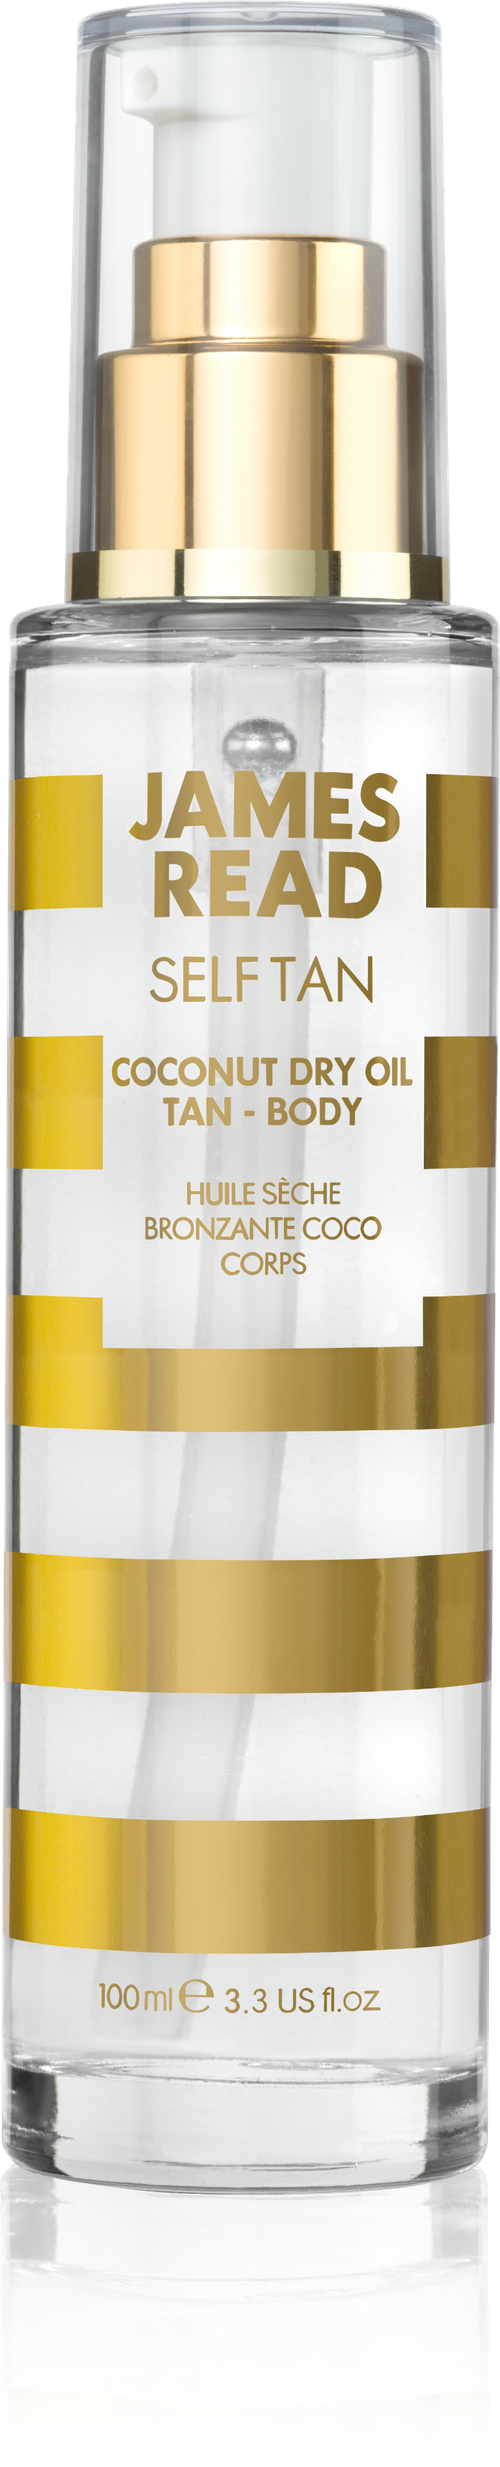 Сухое кокосовое масло с эффектом загара JAMES READ COCONUT DRY OIL TAN BODY